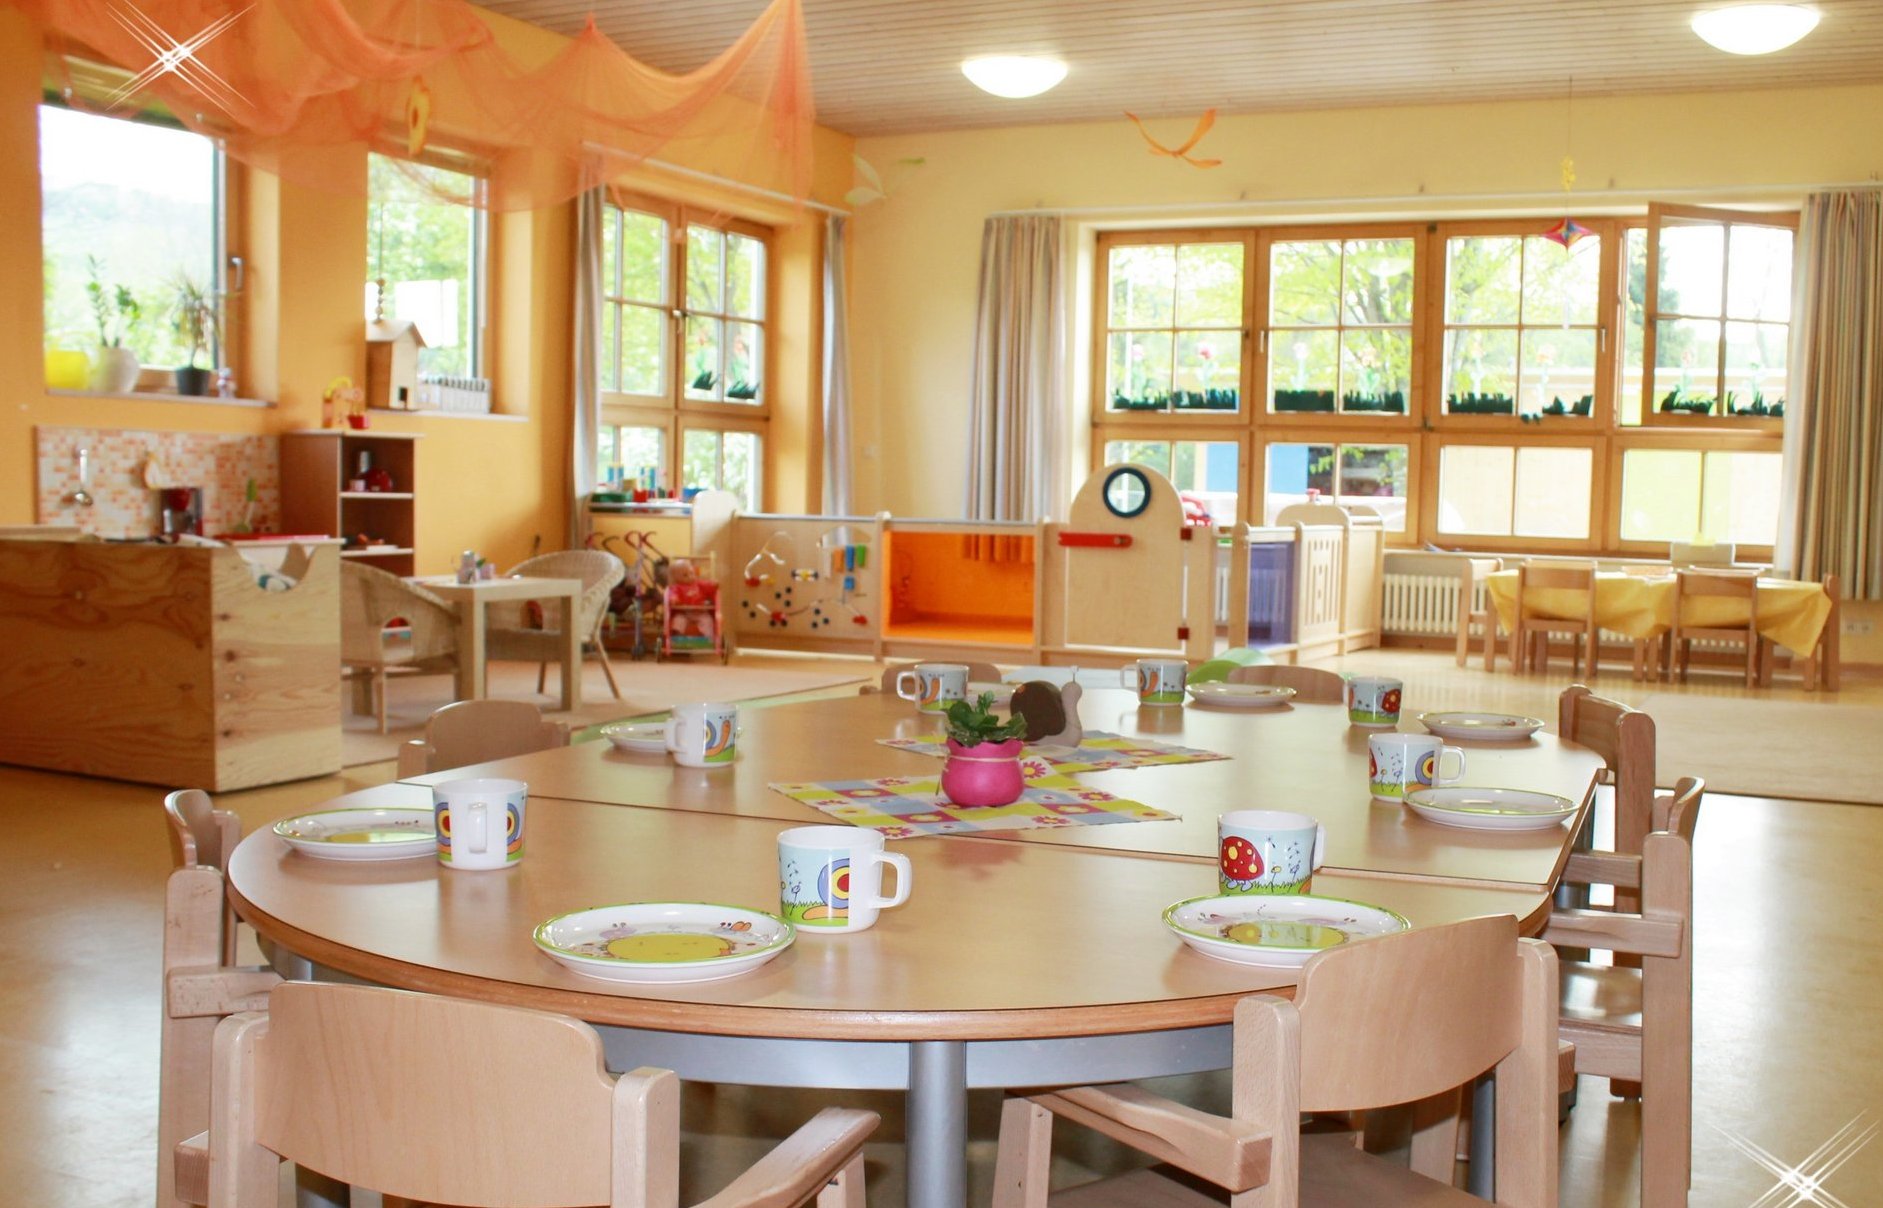 Innenraum des Kindergartens. Im Vordergrund steht ein gedeckter Tisch, der zum Essen einlädt.